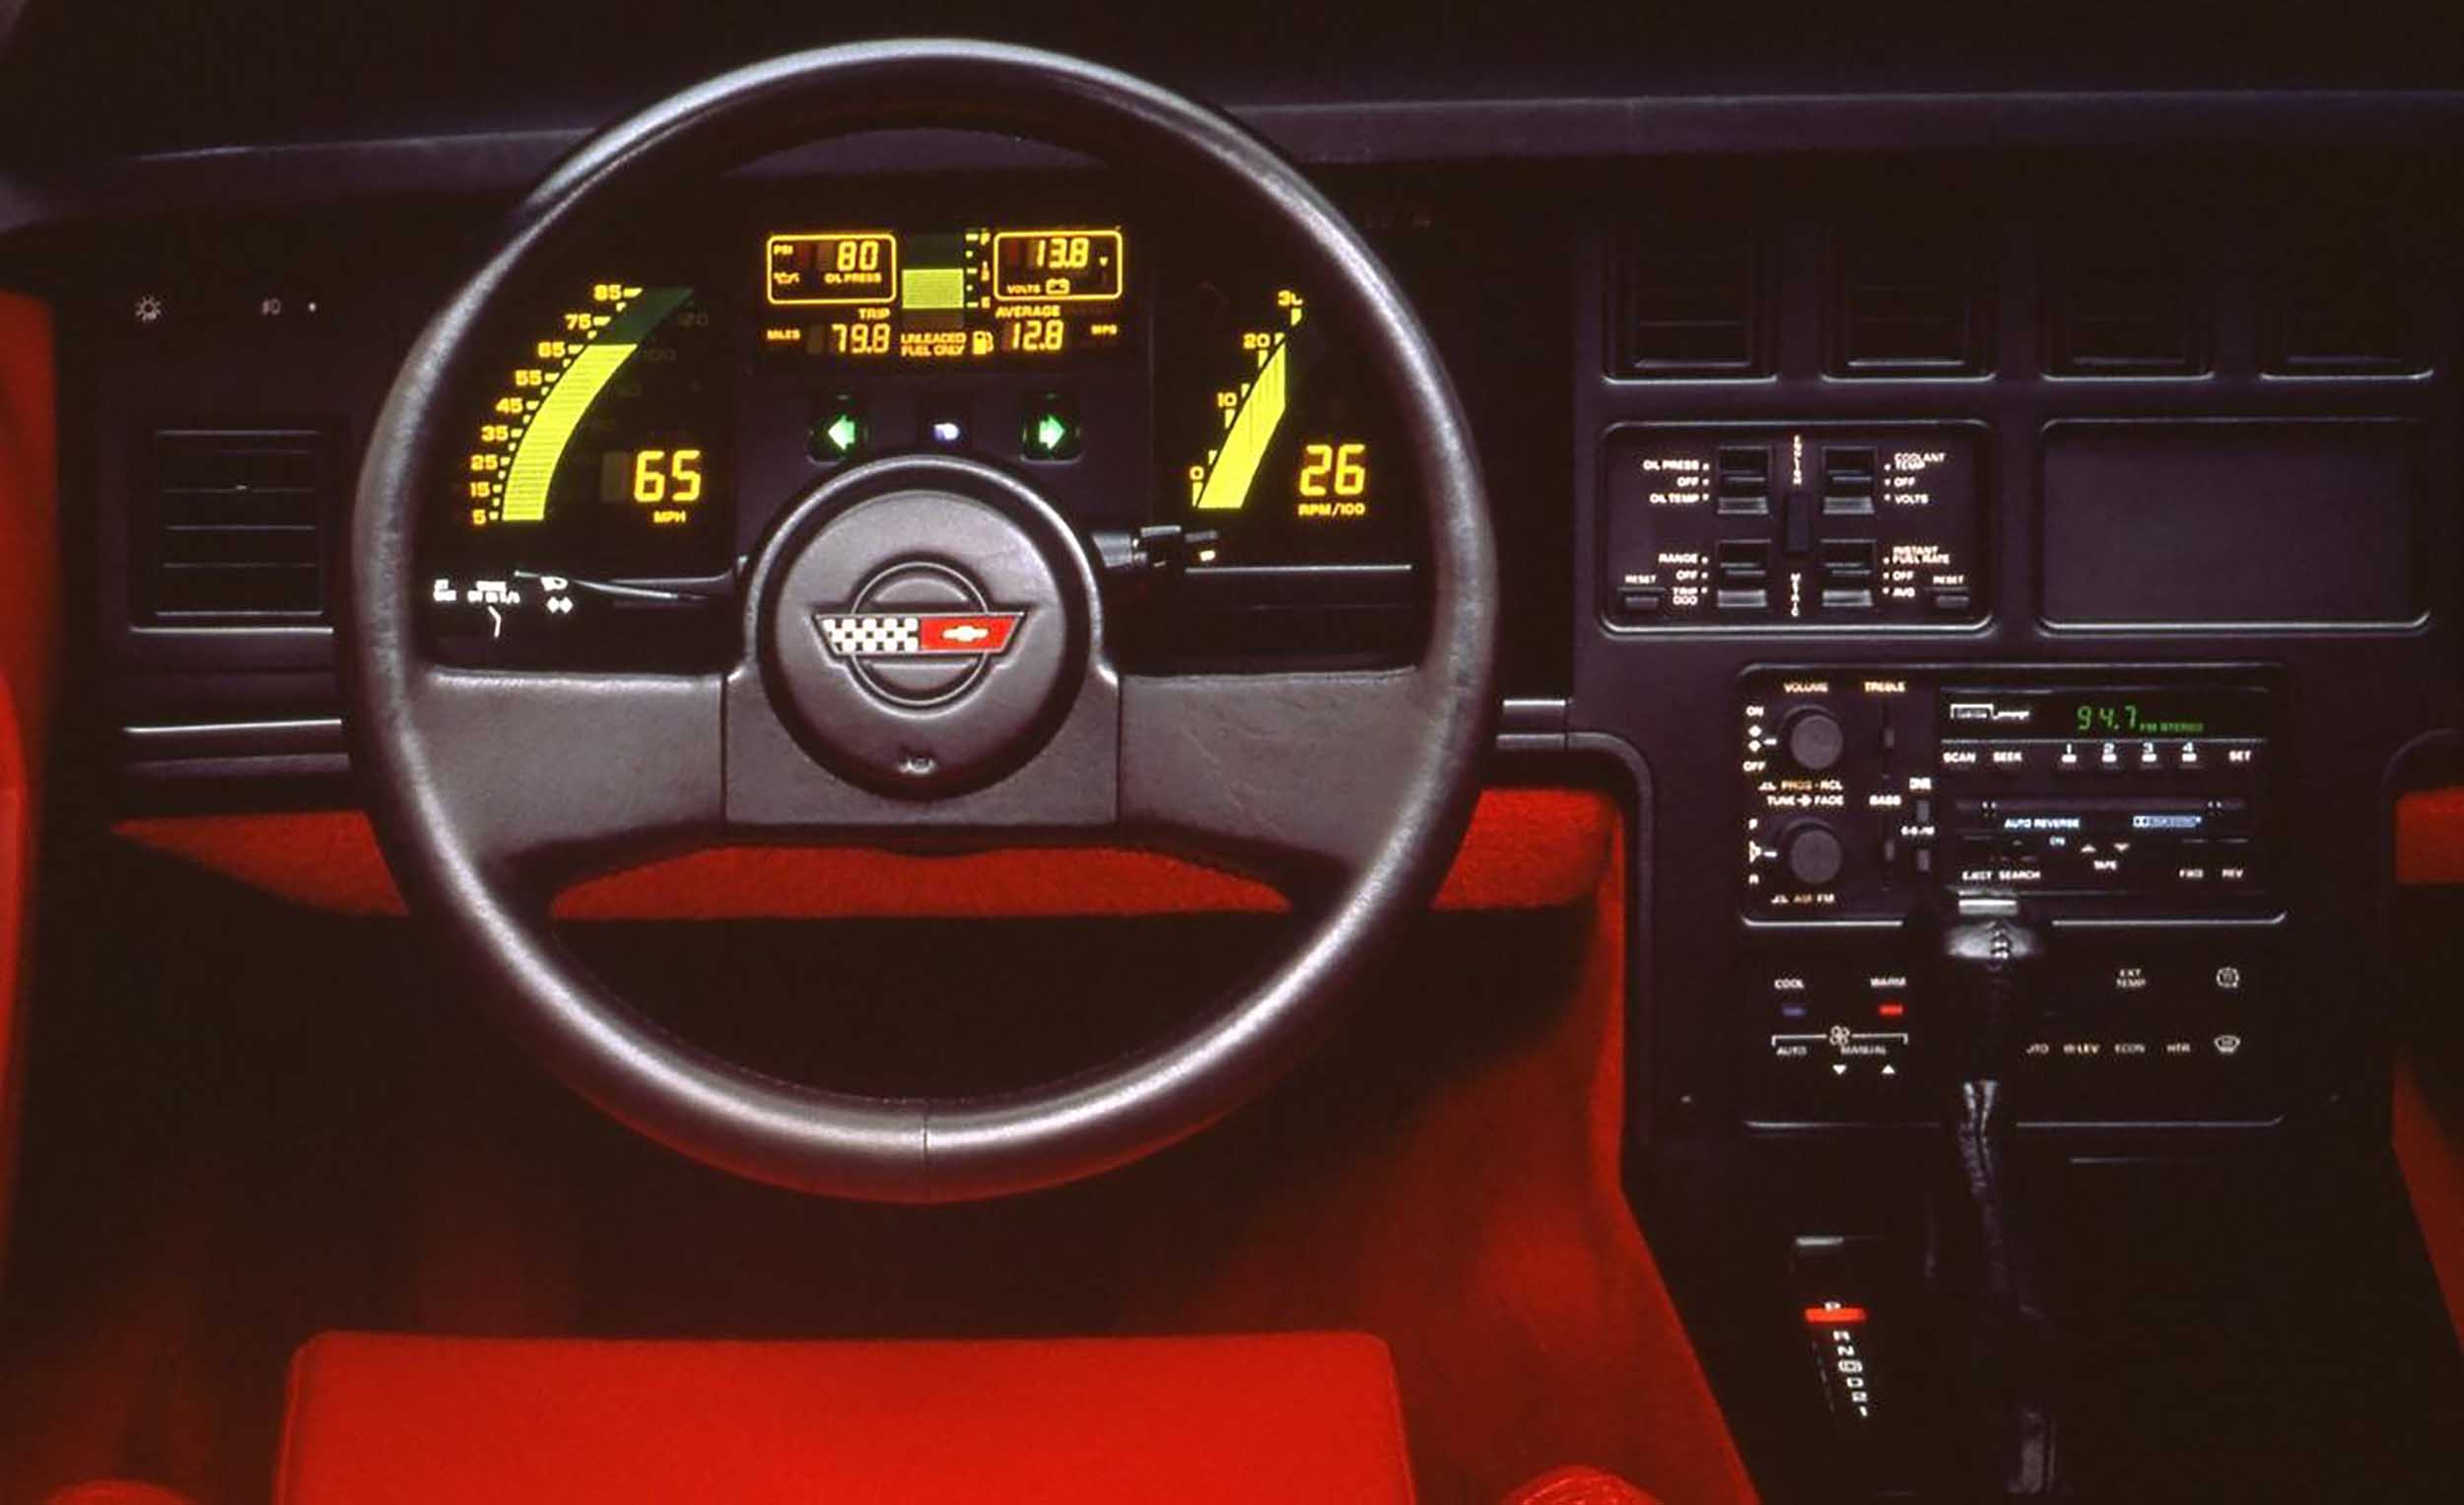 1986 Corvette Interior